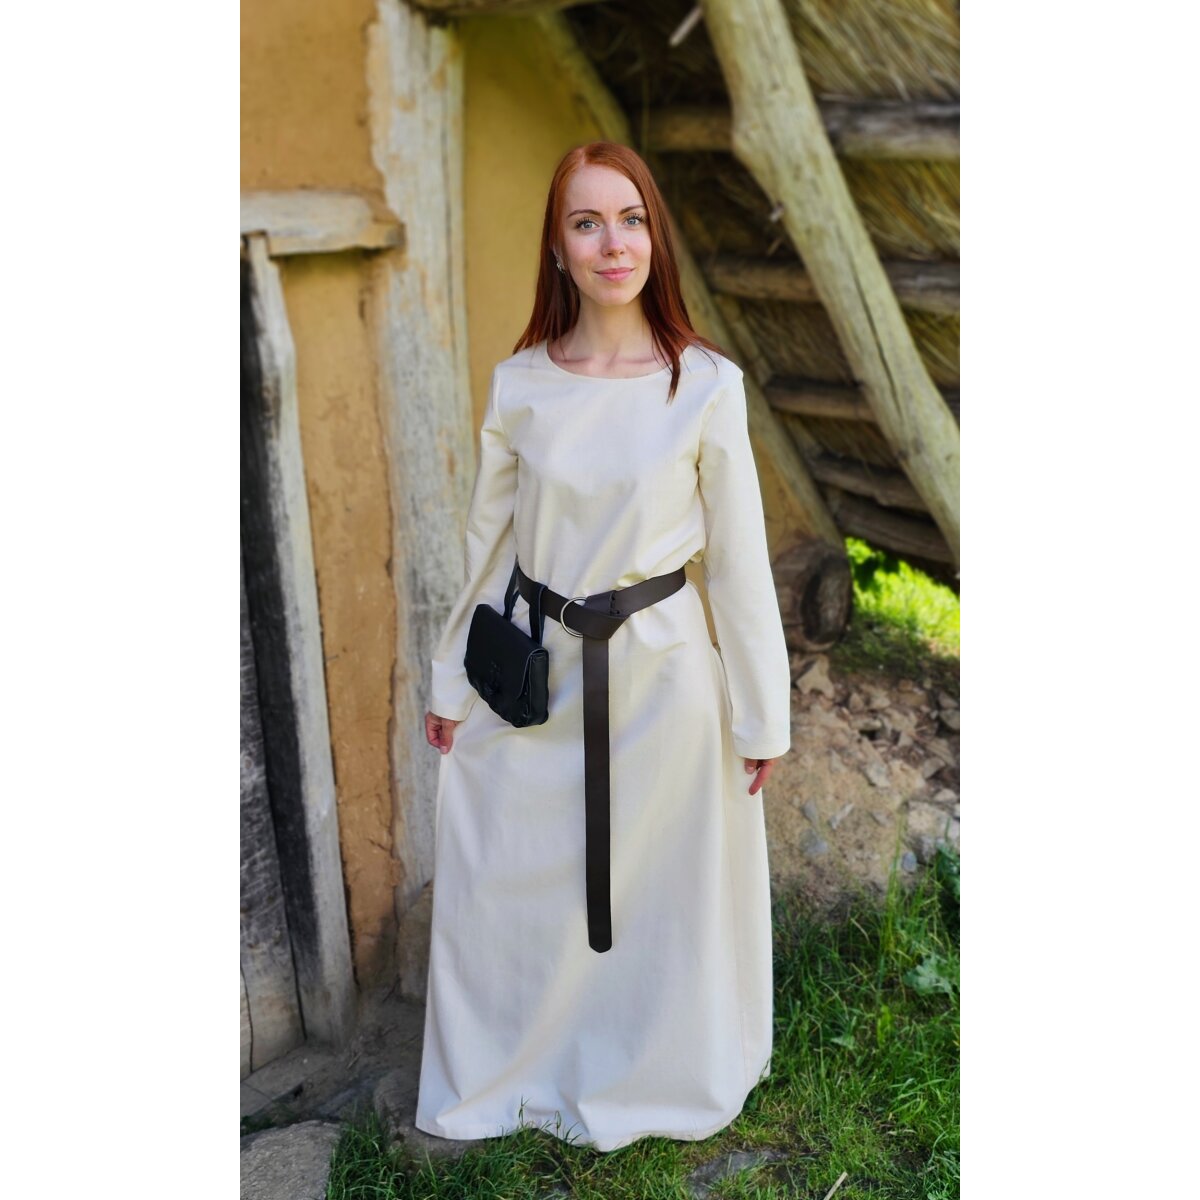 Robe ou sous-robe médiévale classique...